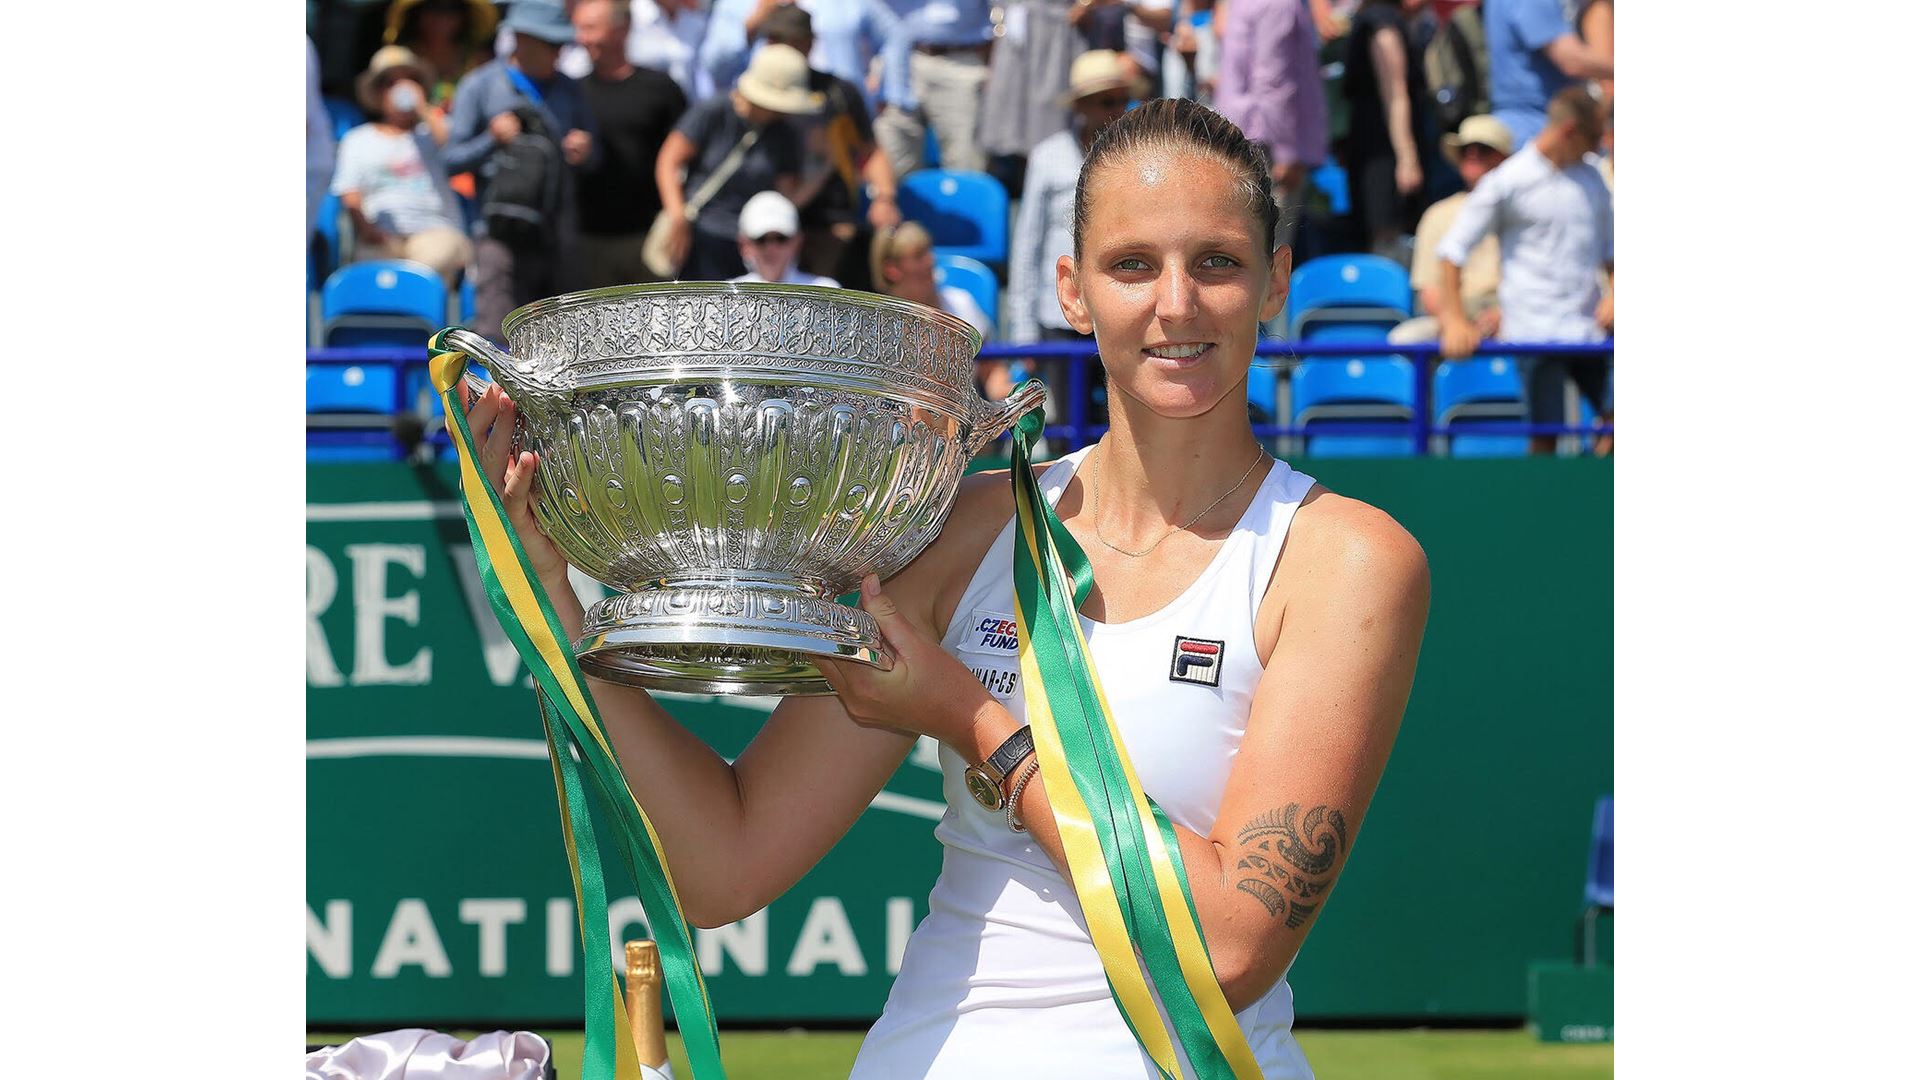 Karolina Pliskova Wins Eastbourne Title